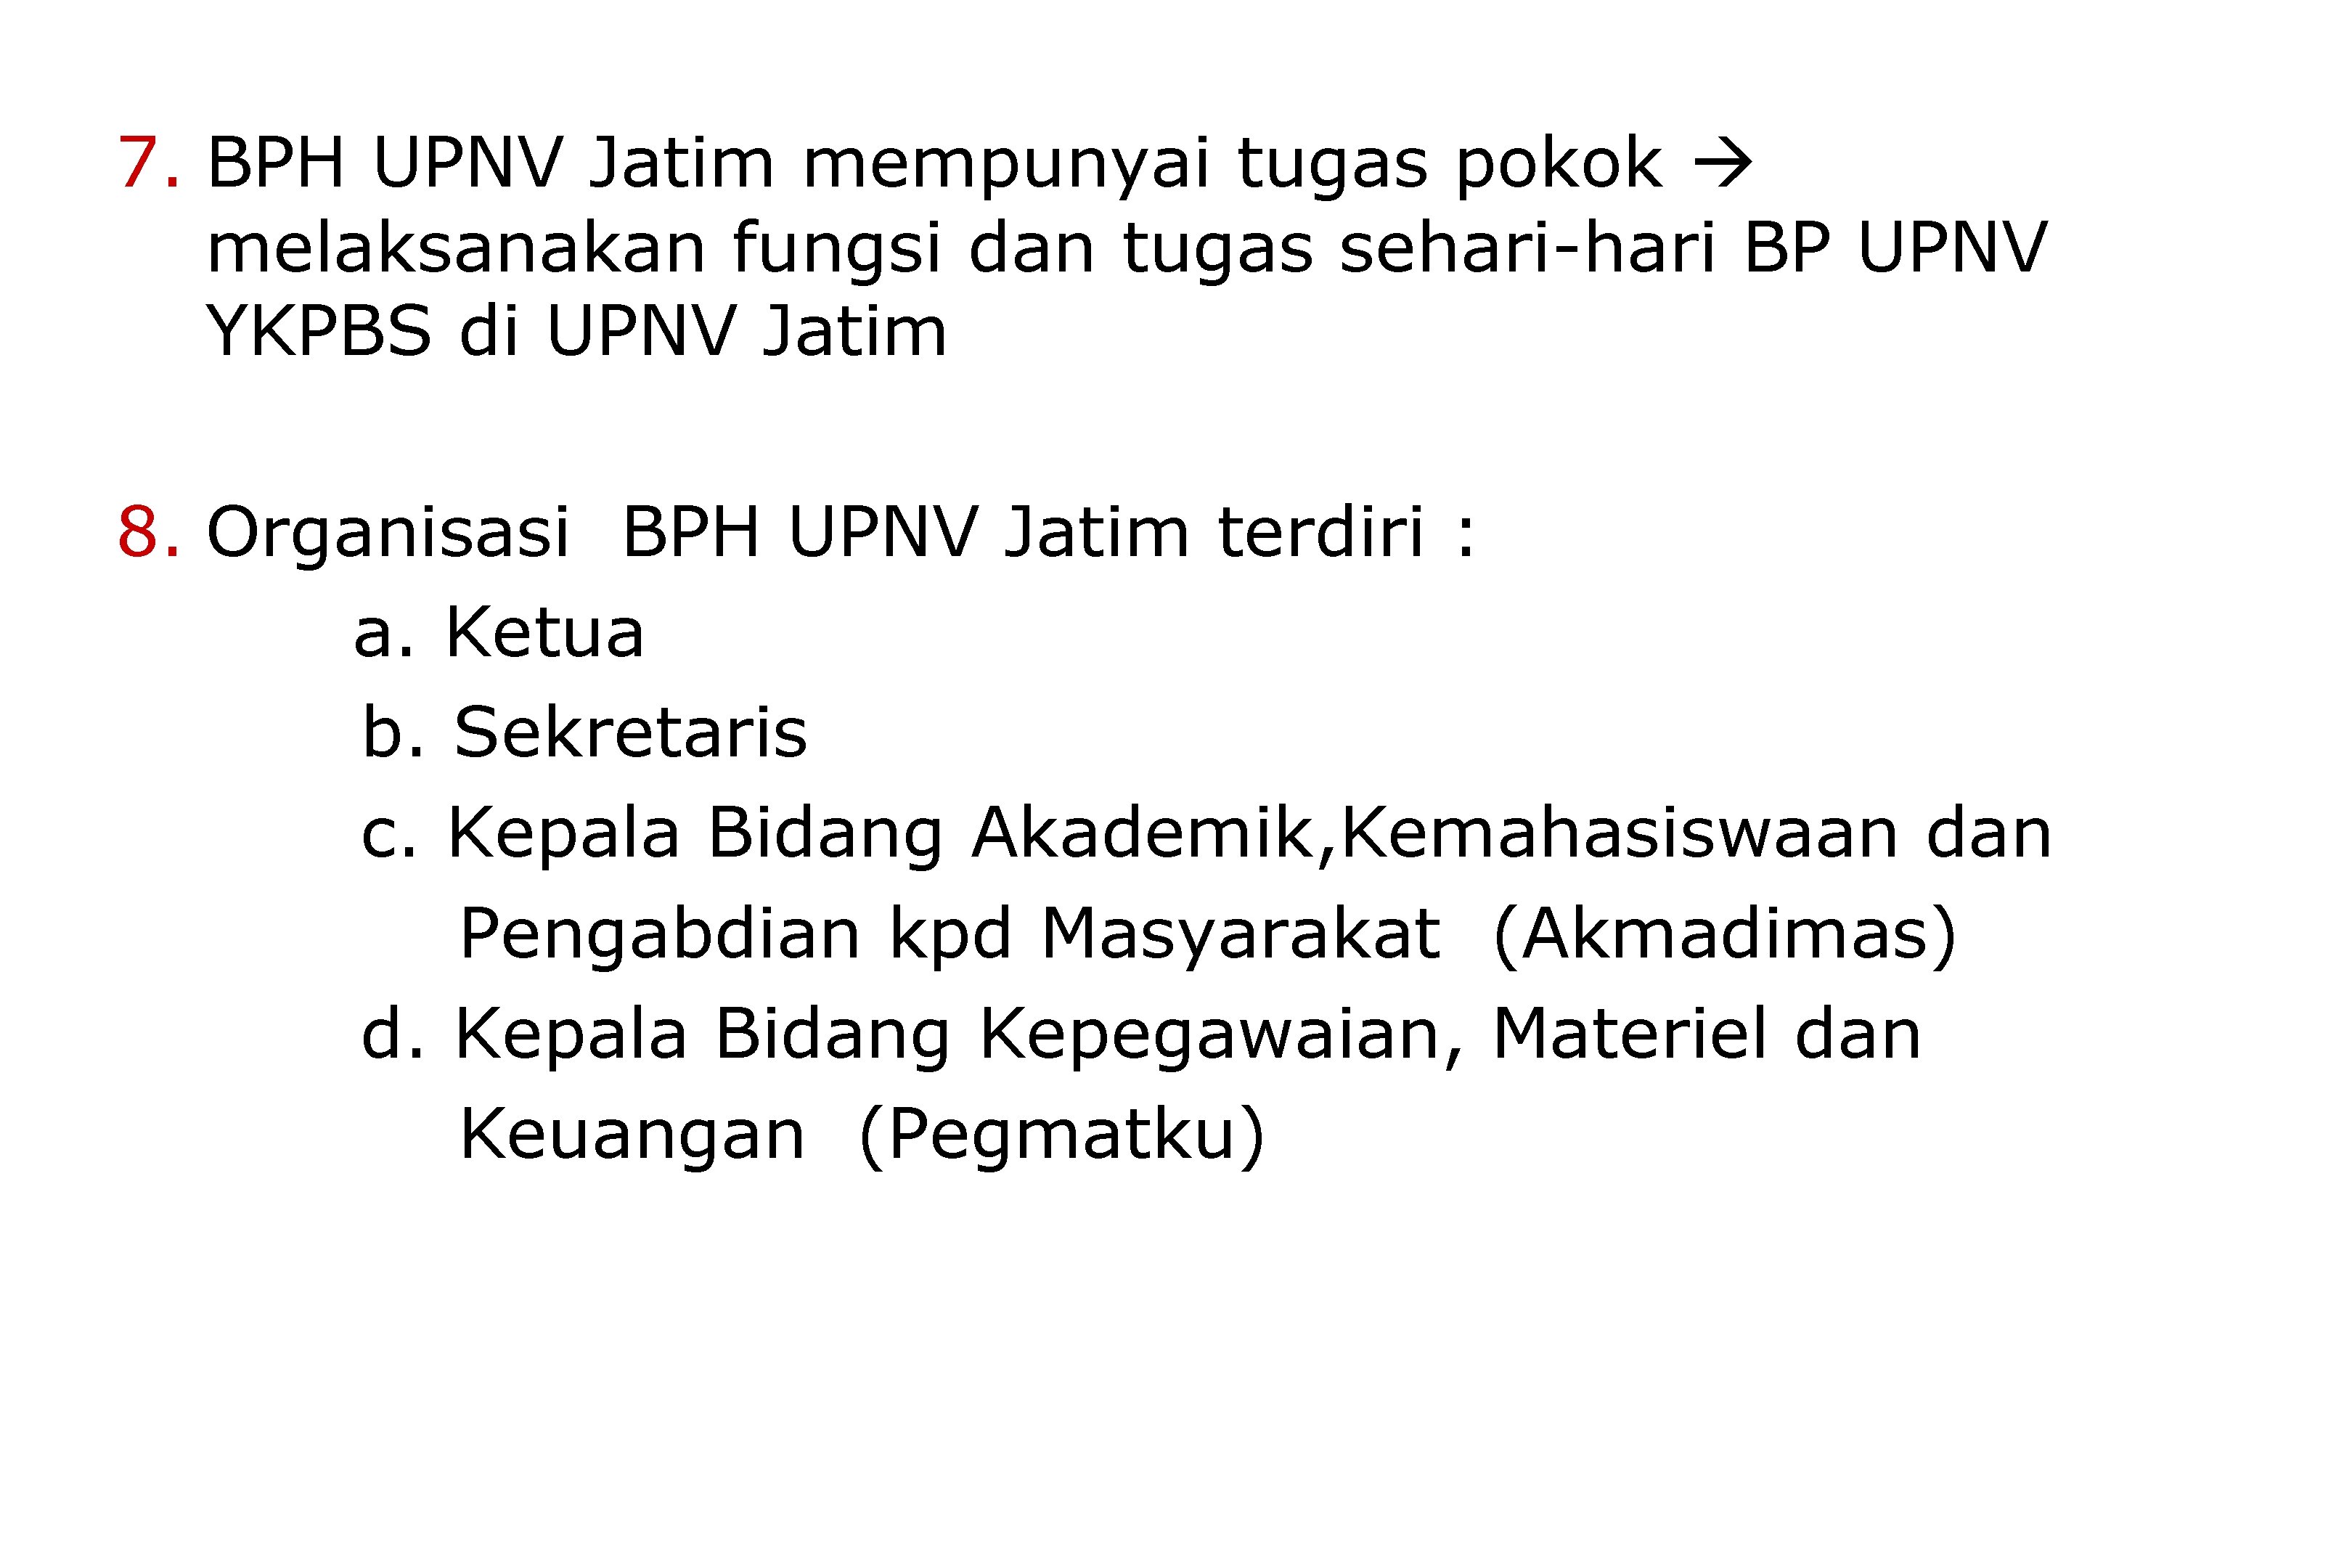 7. BPH UPNV Jatim mempunyai tugas pokok melaksanakan fungsi dan tugas sehari-hari BP UPNV